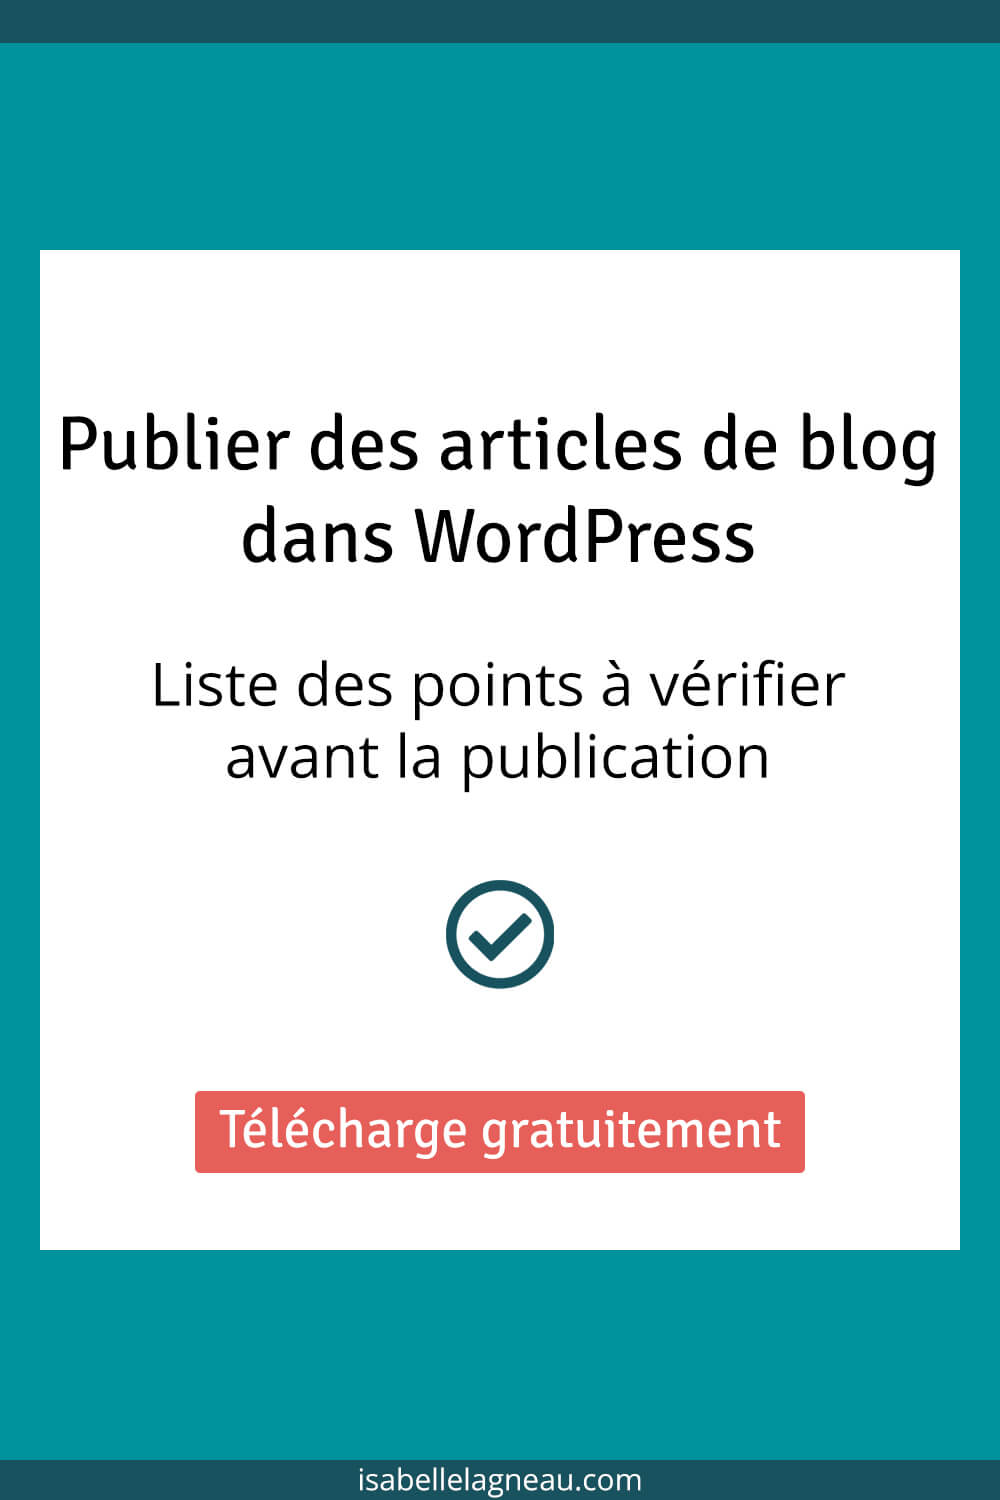 Publier des articles de blog dans WordPress : Liste des points à vérifier avant la publication